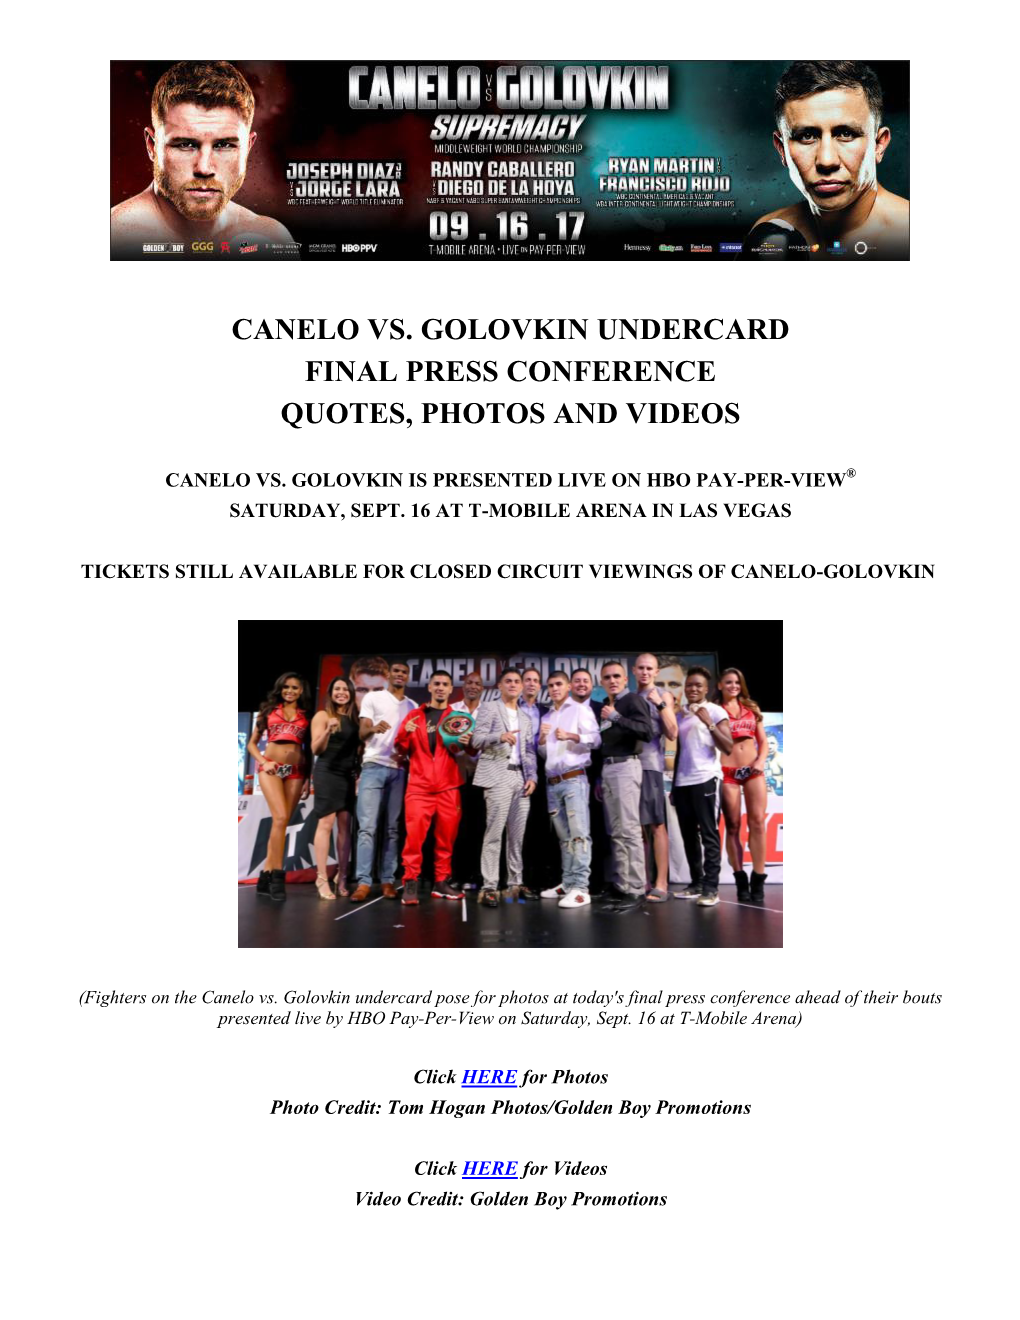 Canelo Vs. Golovkin Undercard Final Press Conference Quotes, Photos and Videos